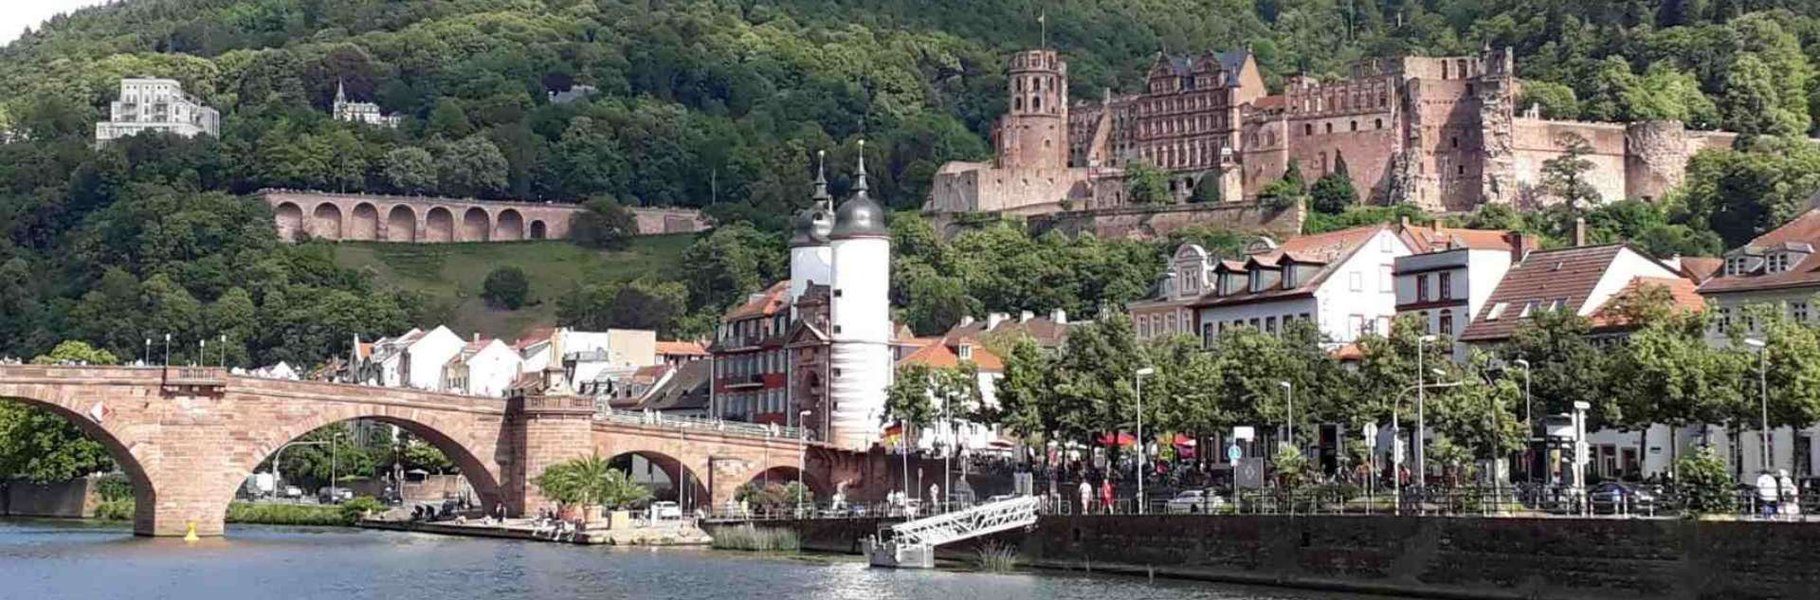 Rhein Neckar Business Travel